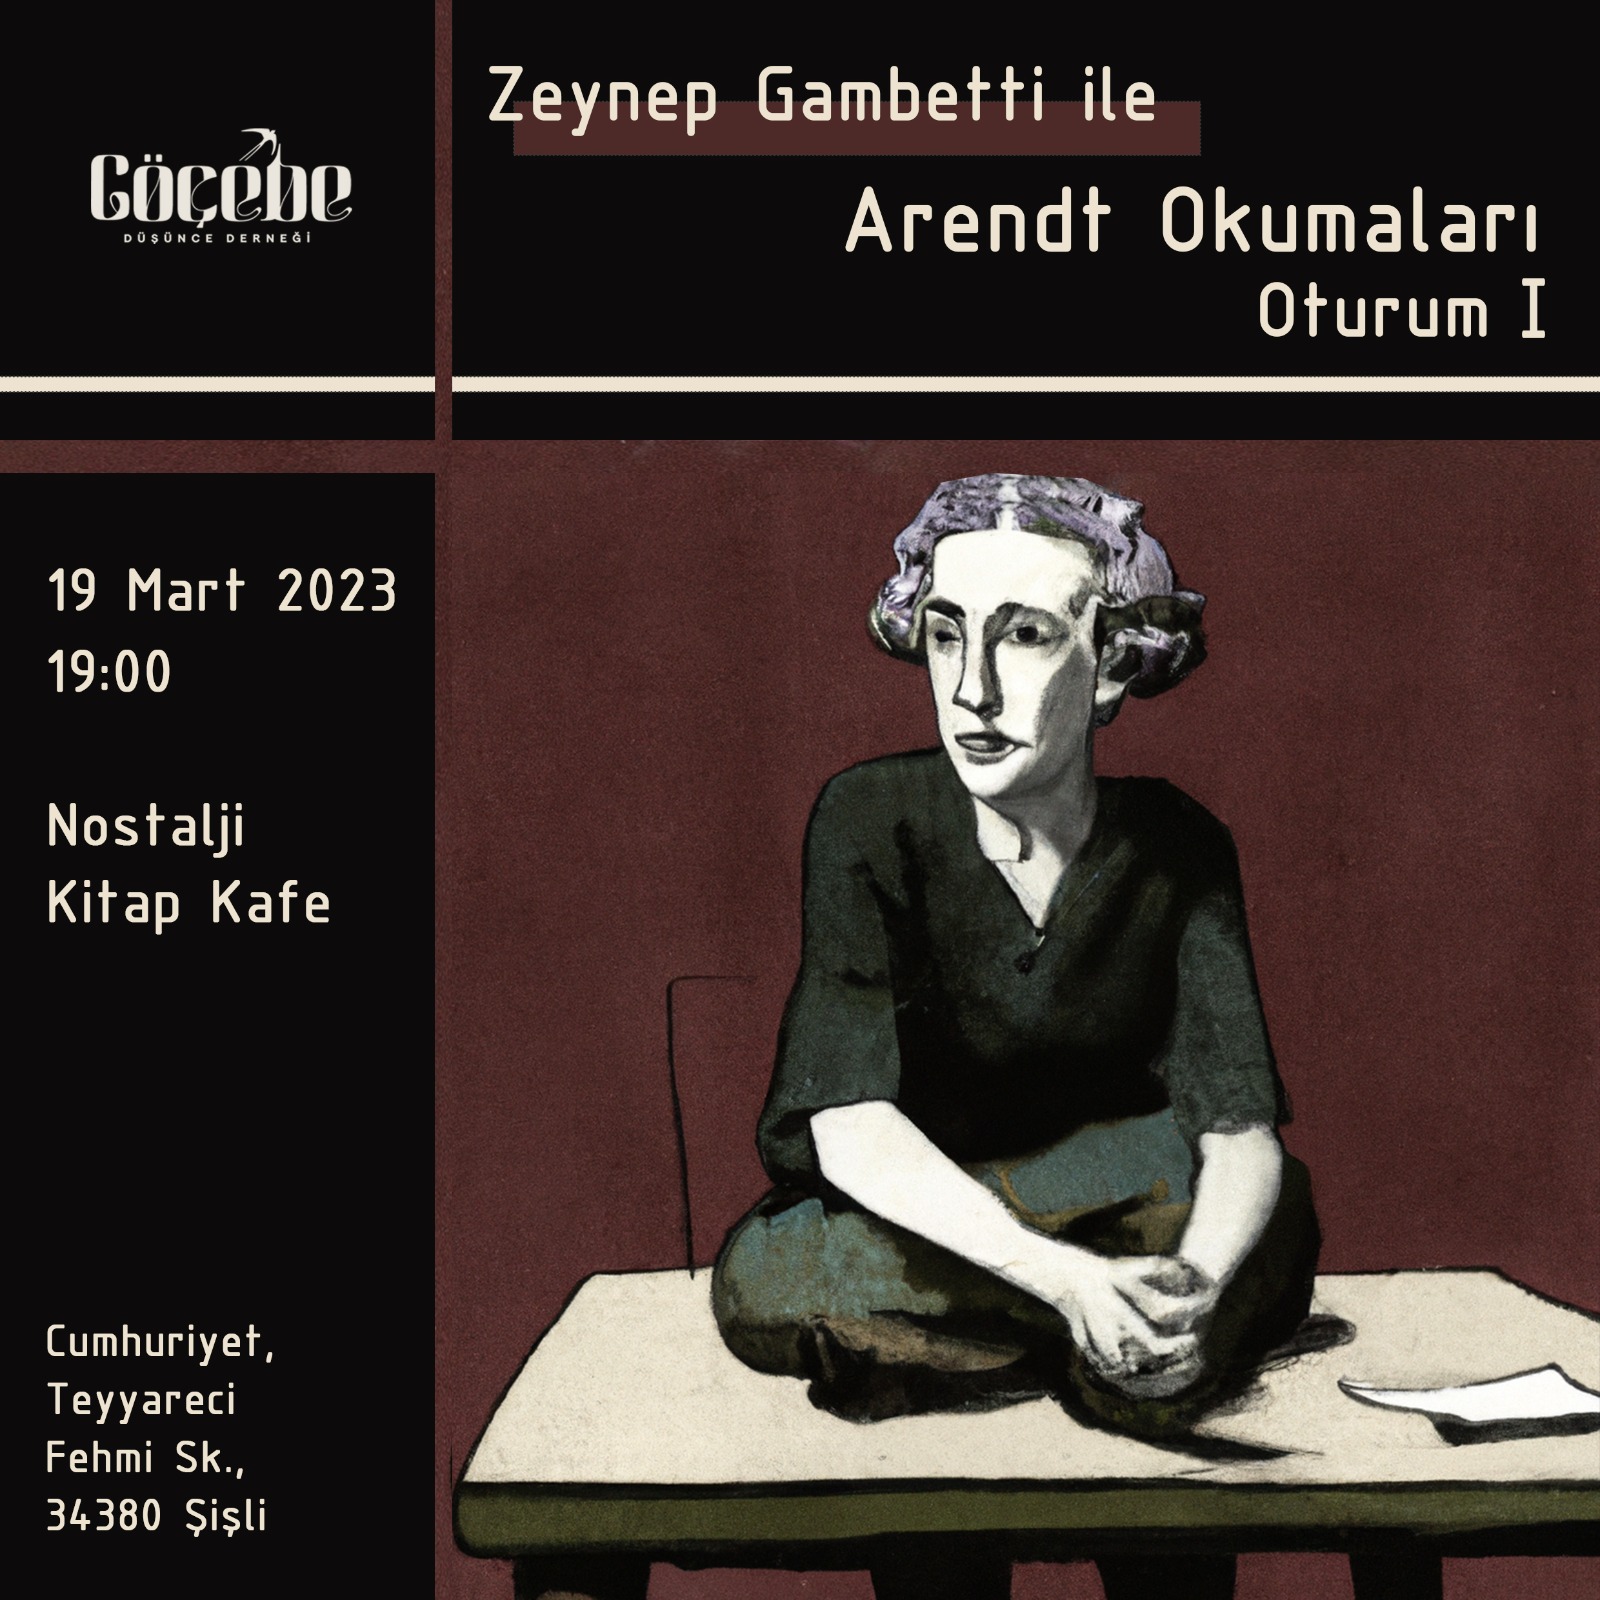 Zeynep Gambetti ile Arendt Okumaları 